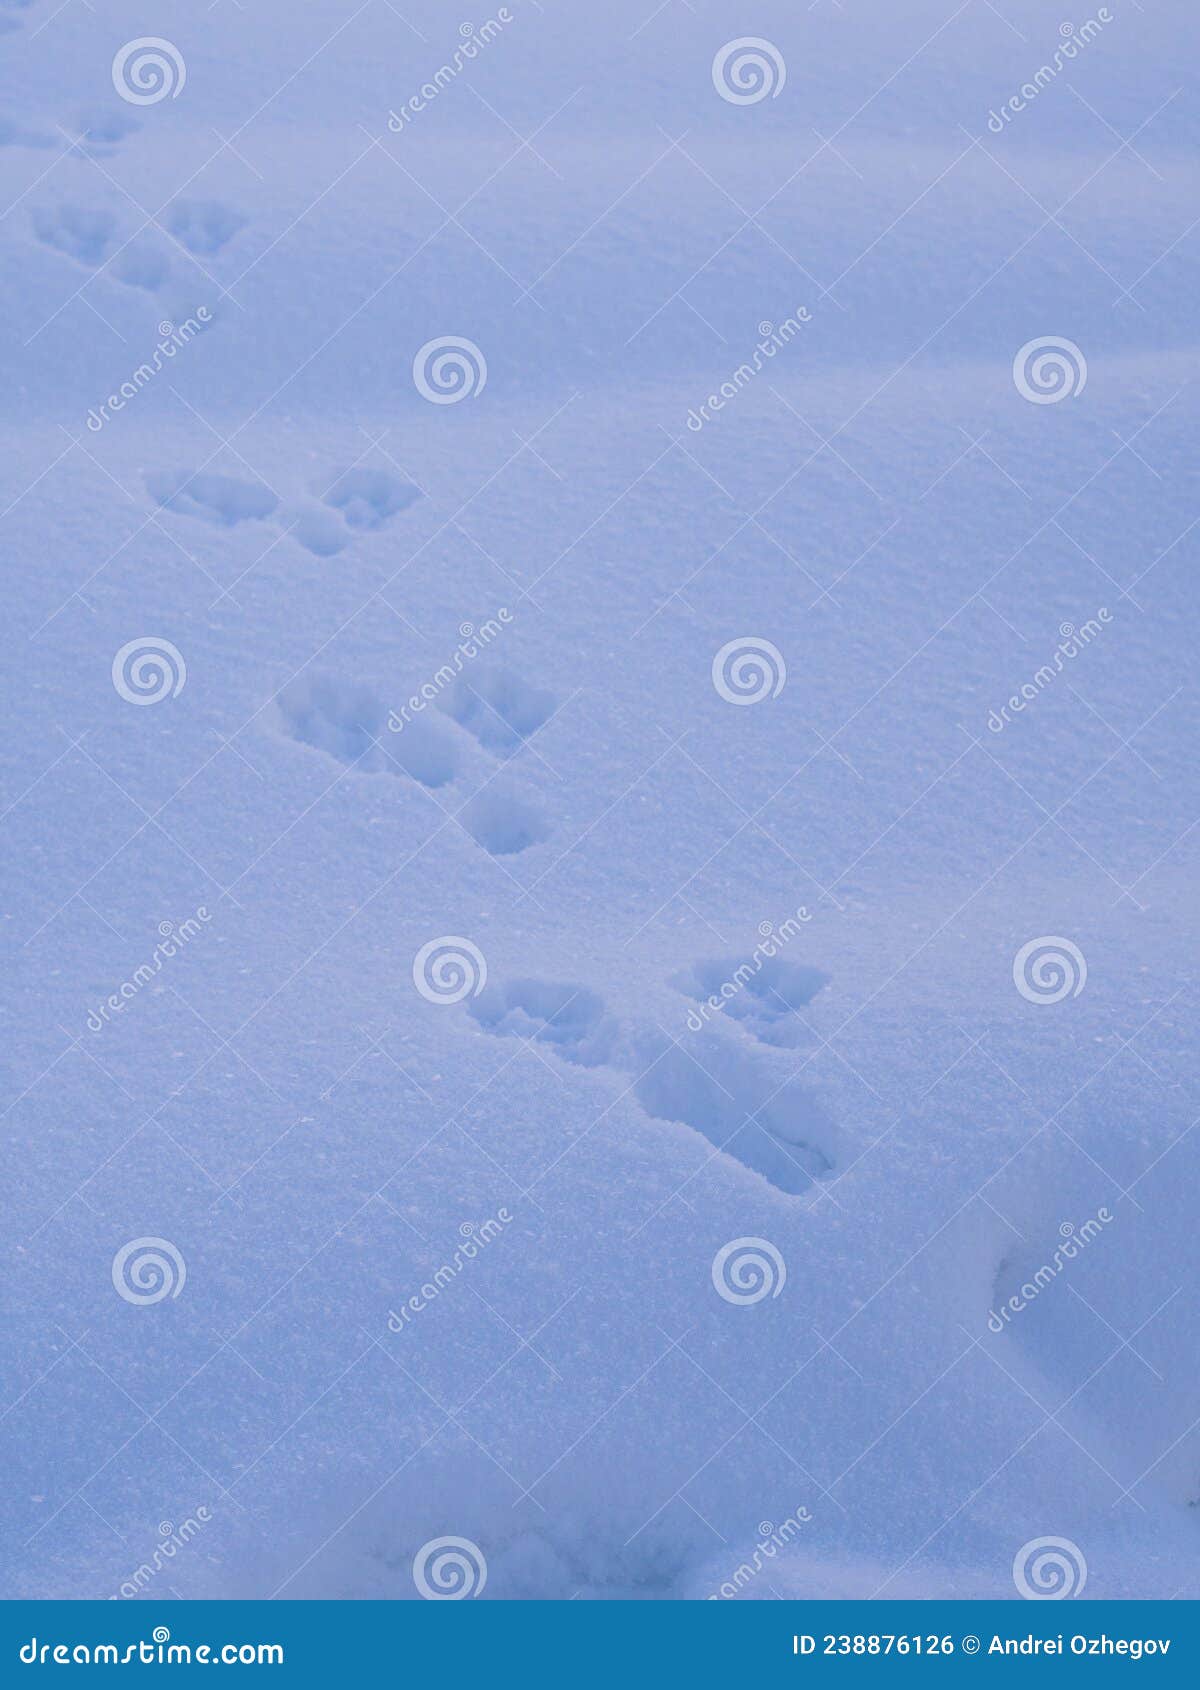 雪中兔脚印的摄影 库存照片. 图片 包括有 摄影, 兔子, 脚印 - 173465784